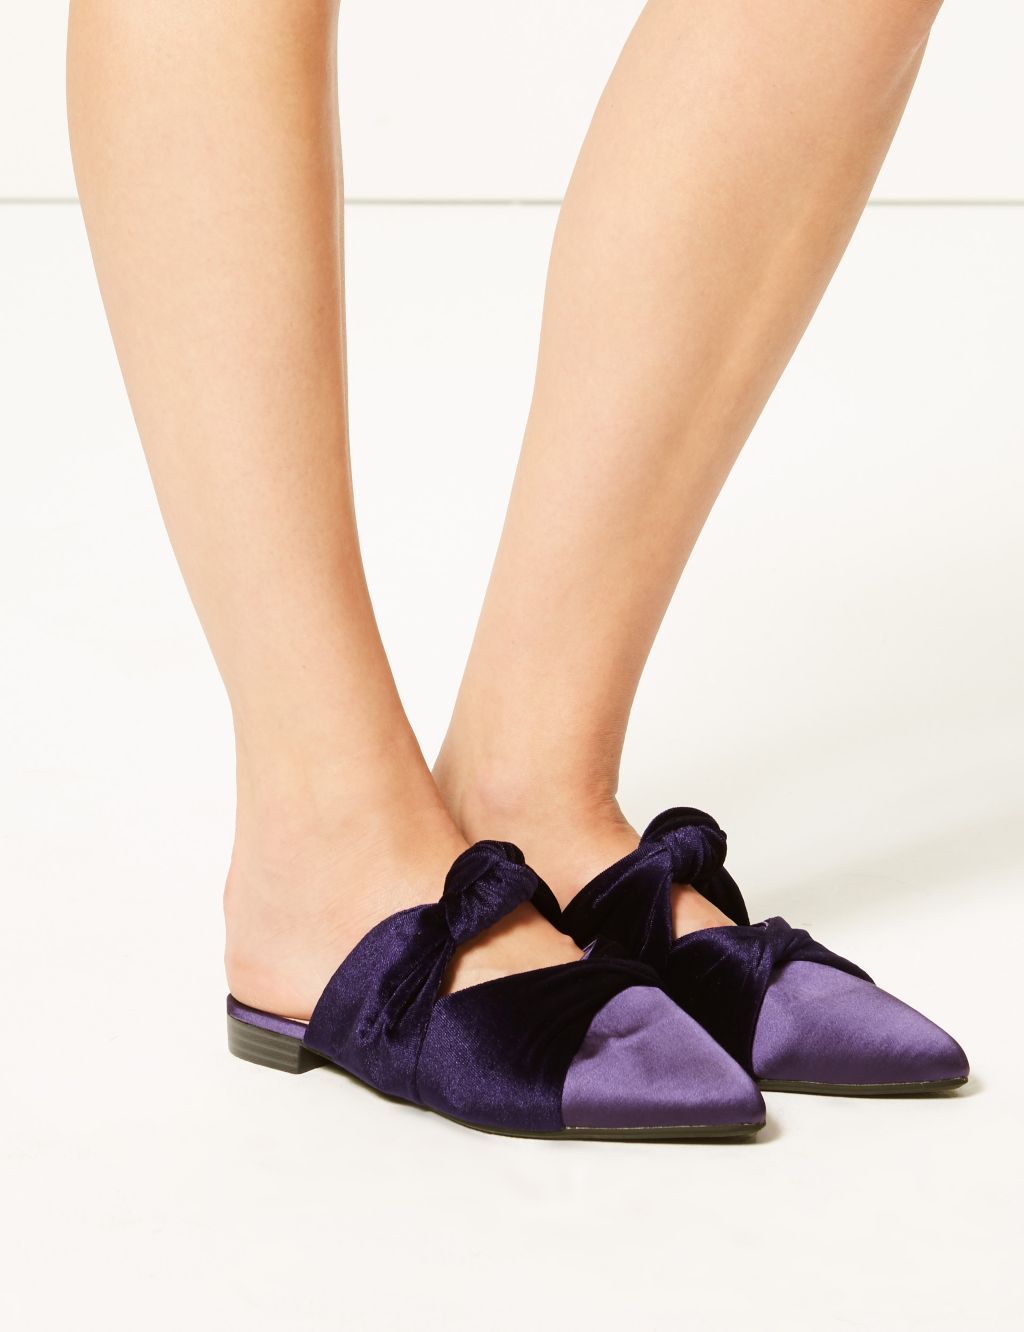 m&s purple shoes